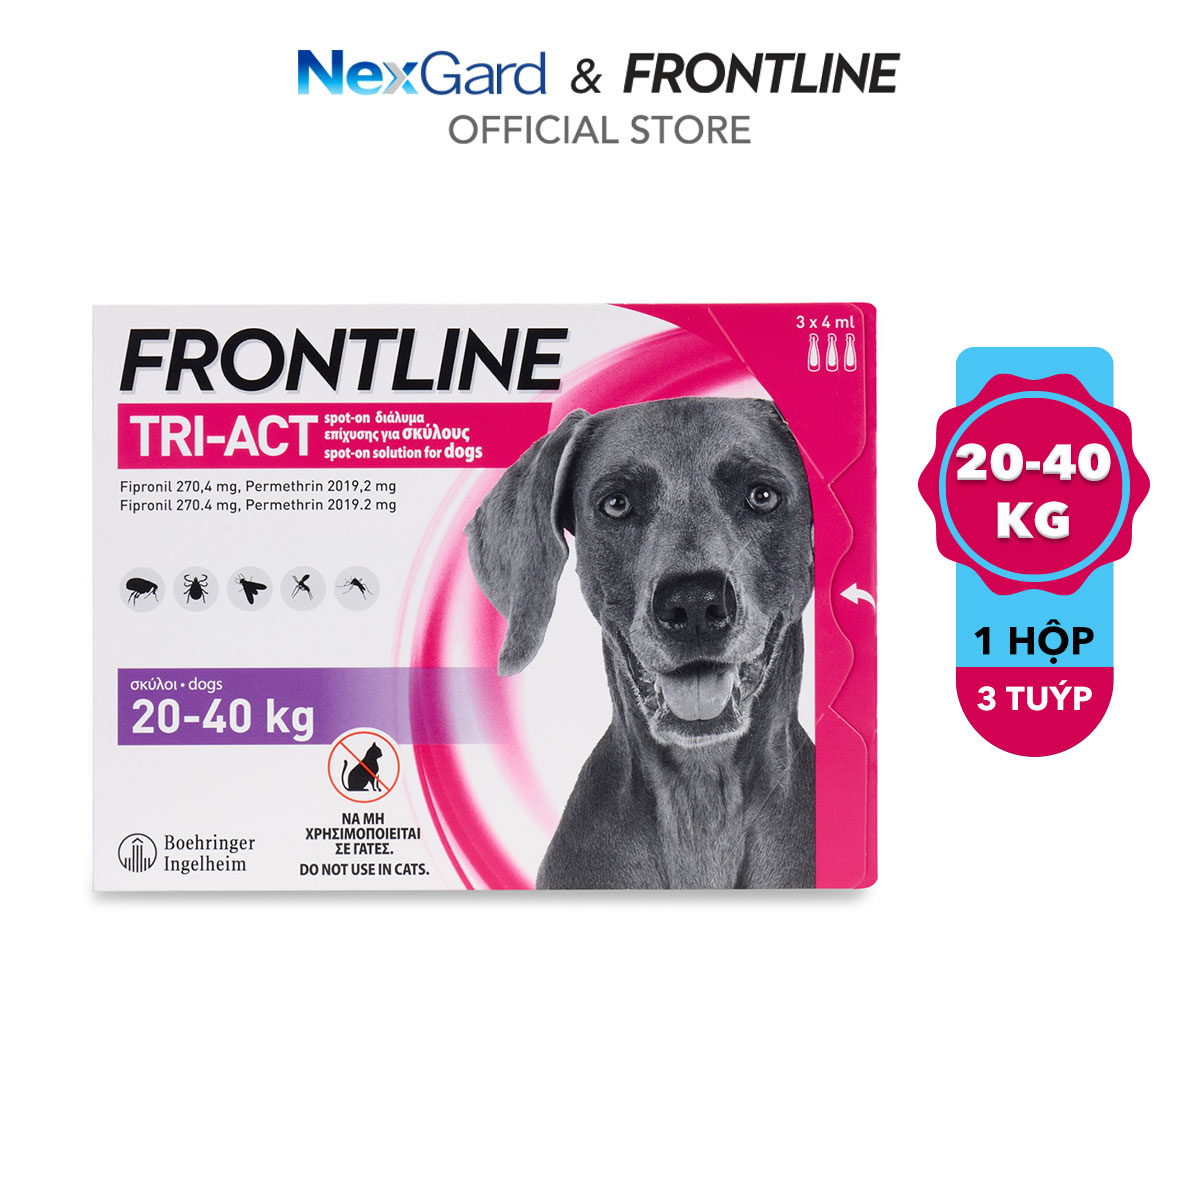 Frontline Tri-Act - Tuýp nhỏ gáy phòng & trị ve, rận, bọ chét, ruồi